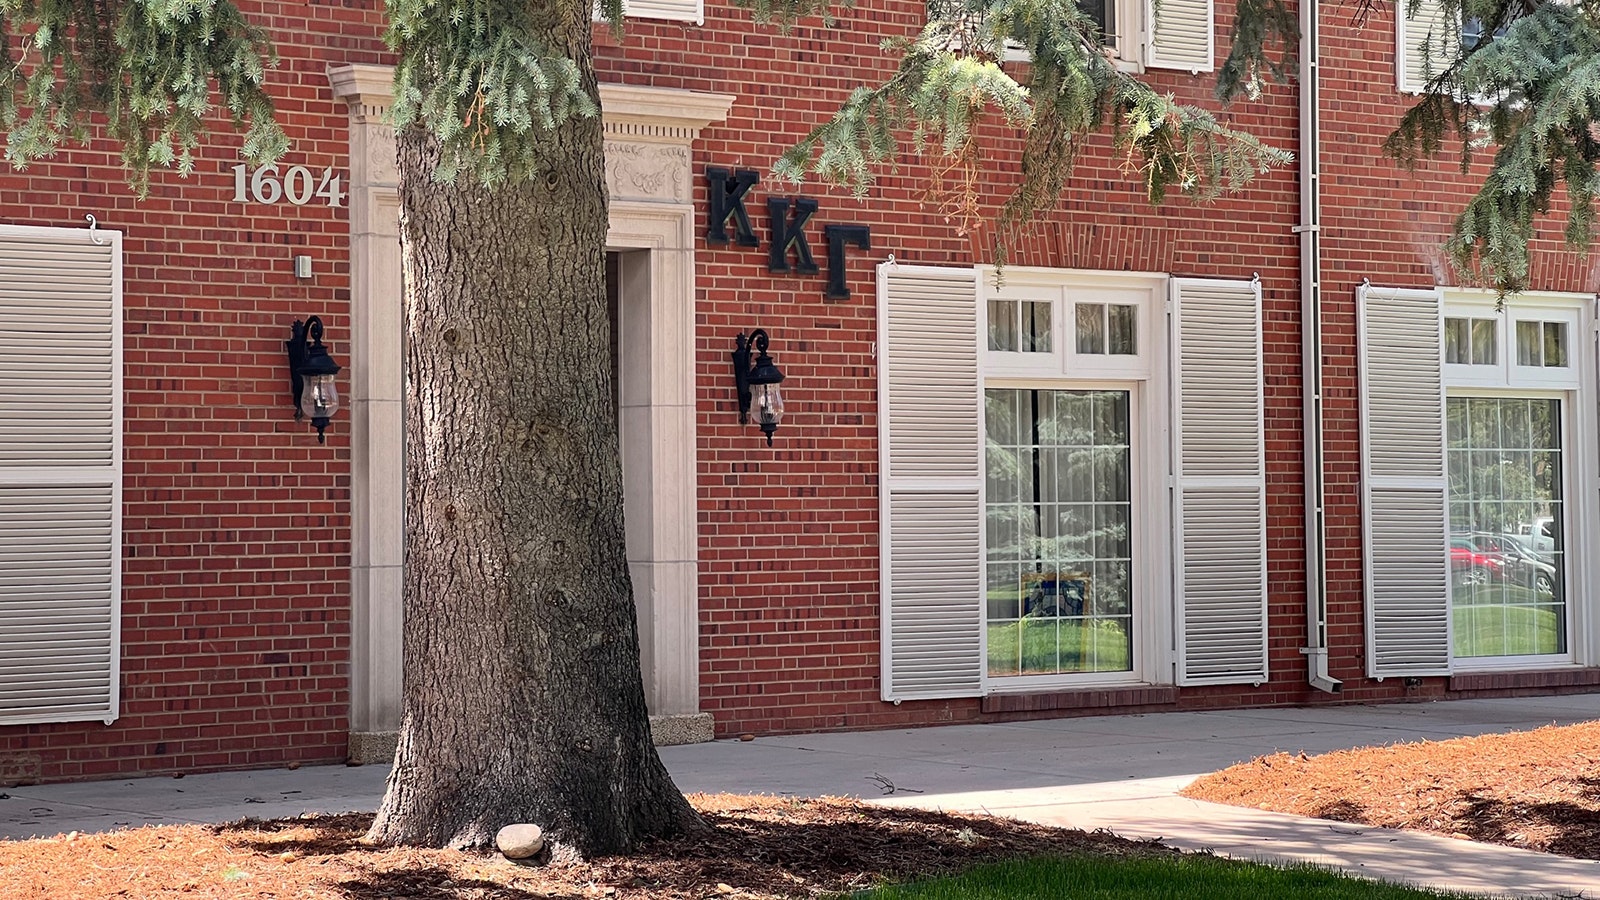 The Kappa Kappa Gamma sorority house in Laramie, Wyoming.